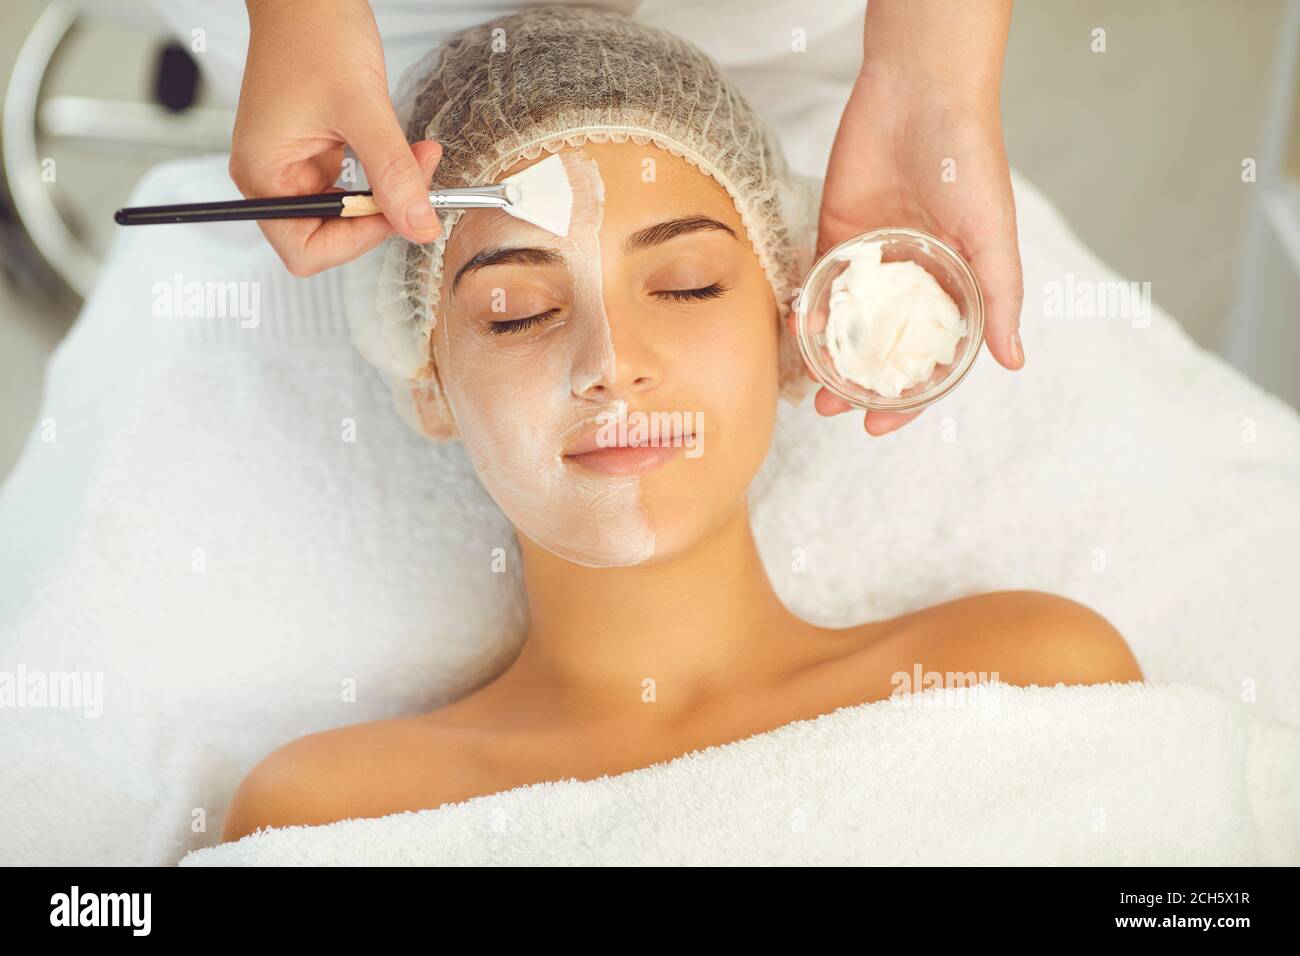 Dermatologue mettant un masque hydratant sur le visage des femmes pendant la procédure de soin de la peau Banque D'Images